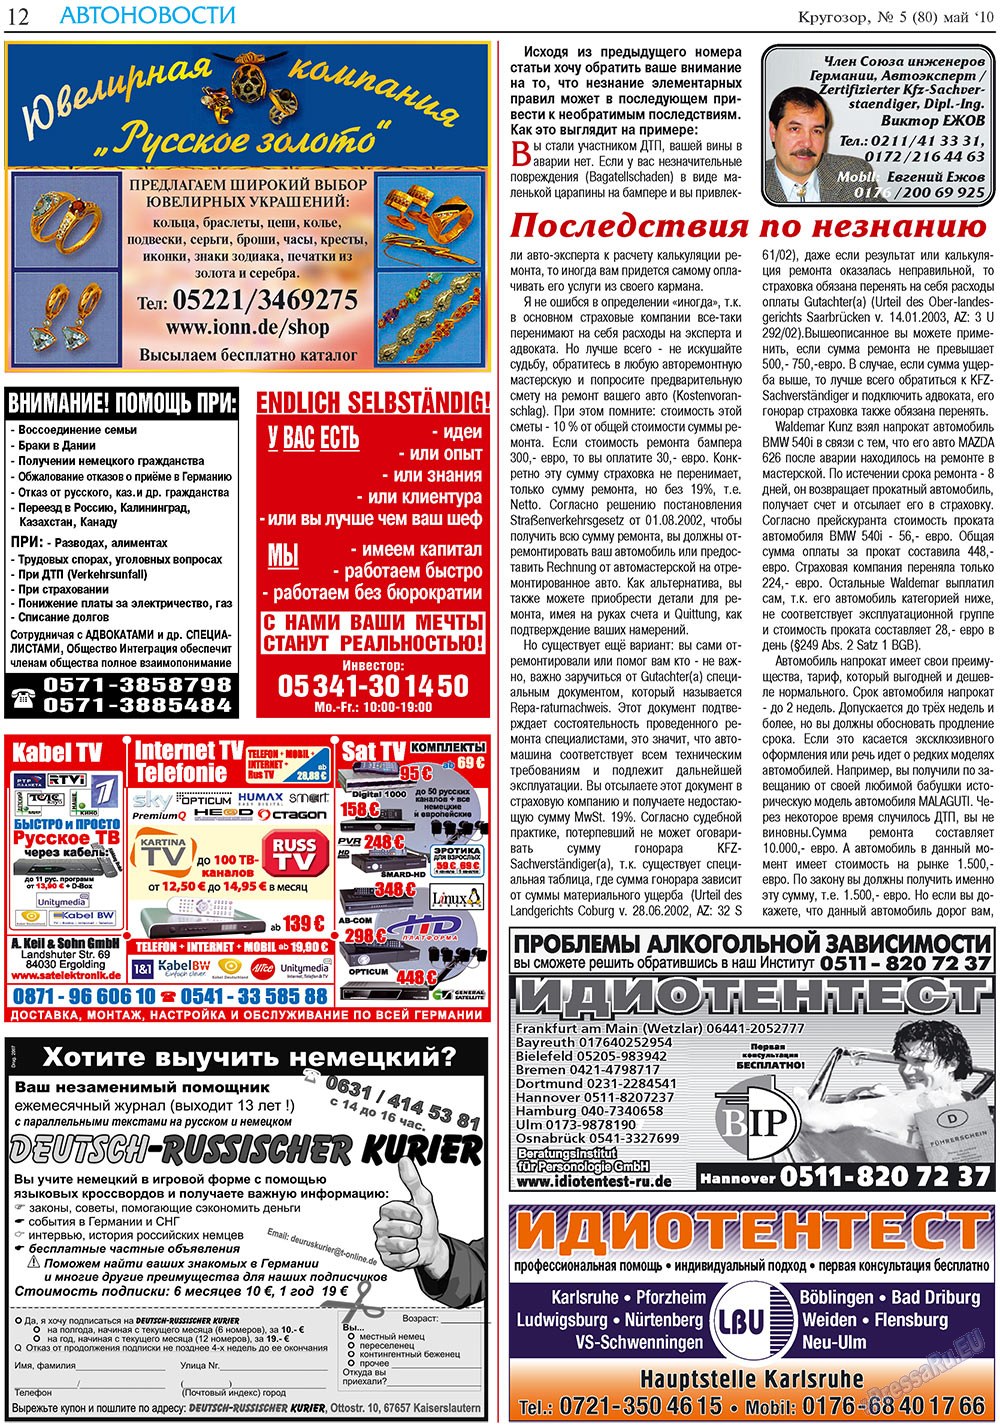 Кругозор плюс!, газета. 2010 №5 стр.12